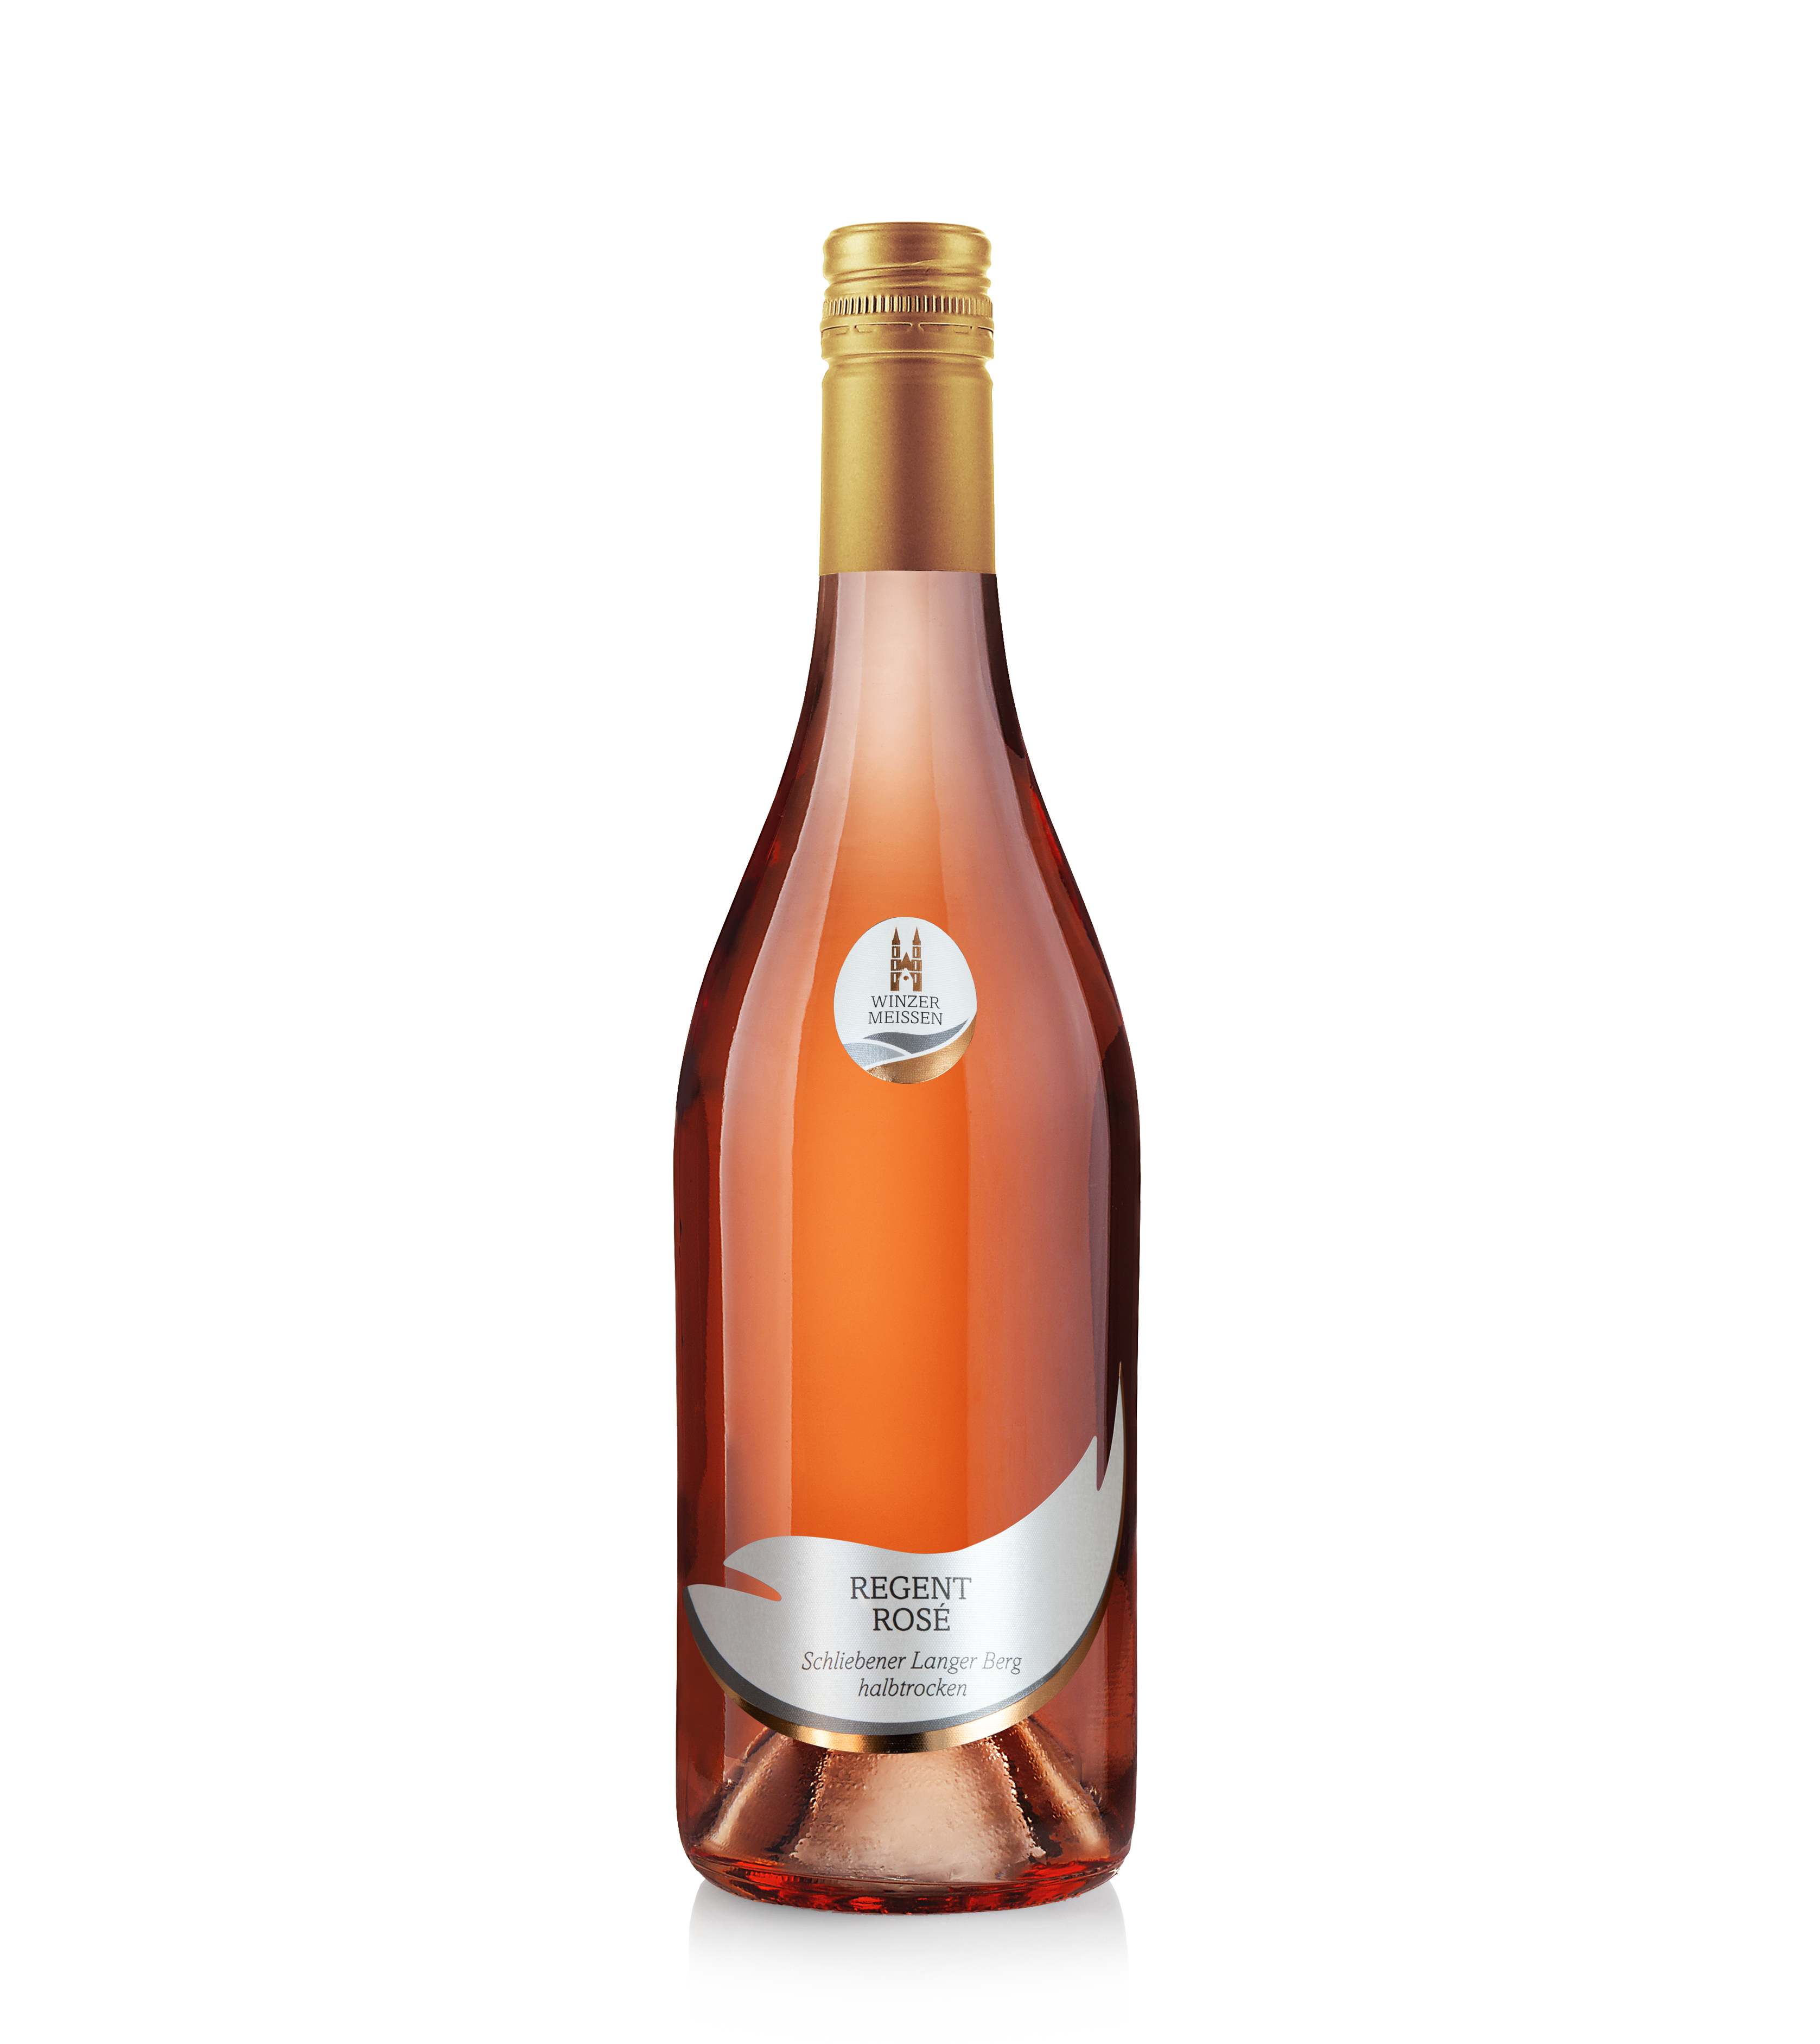 2021 Regent Rosé Qualitätswein Schliebener Langer Berg halbtrocken